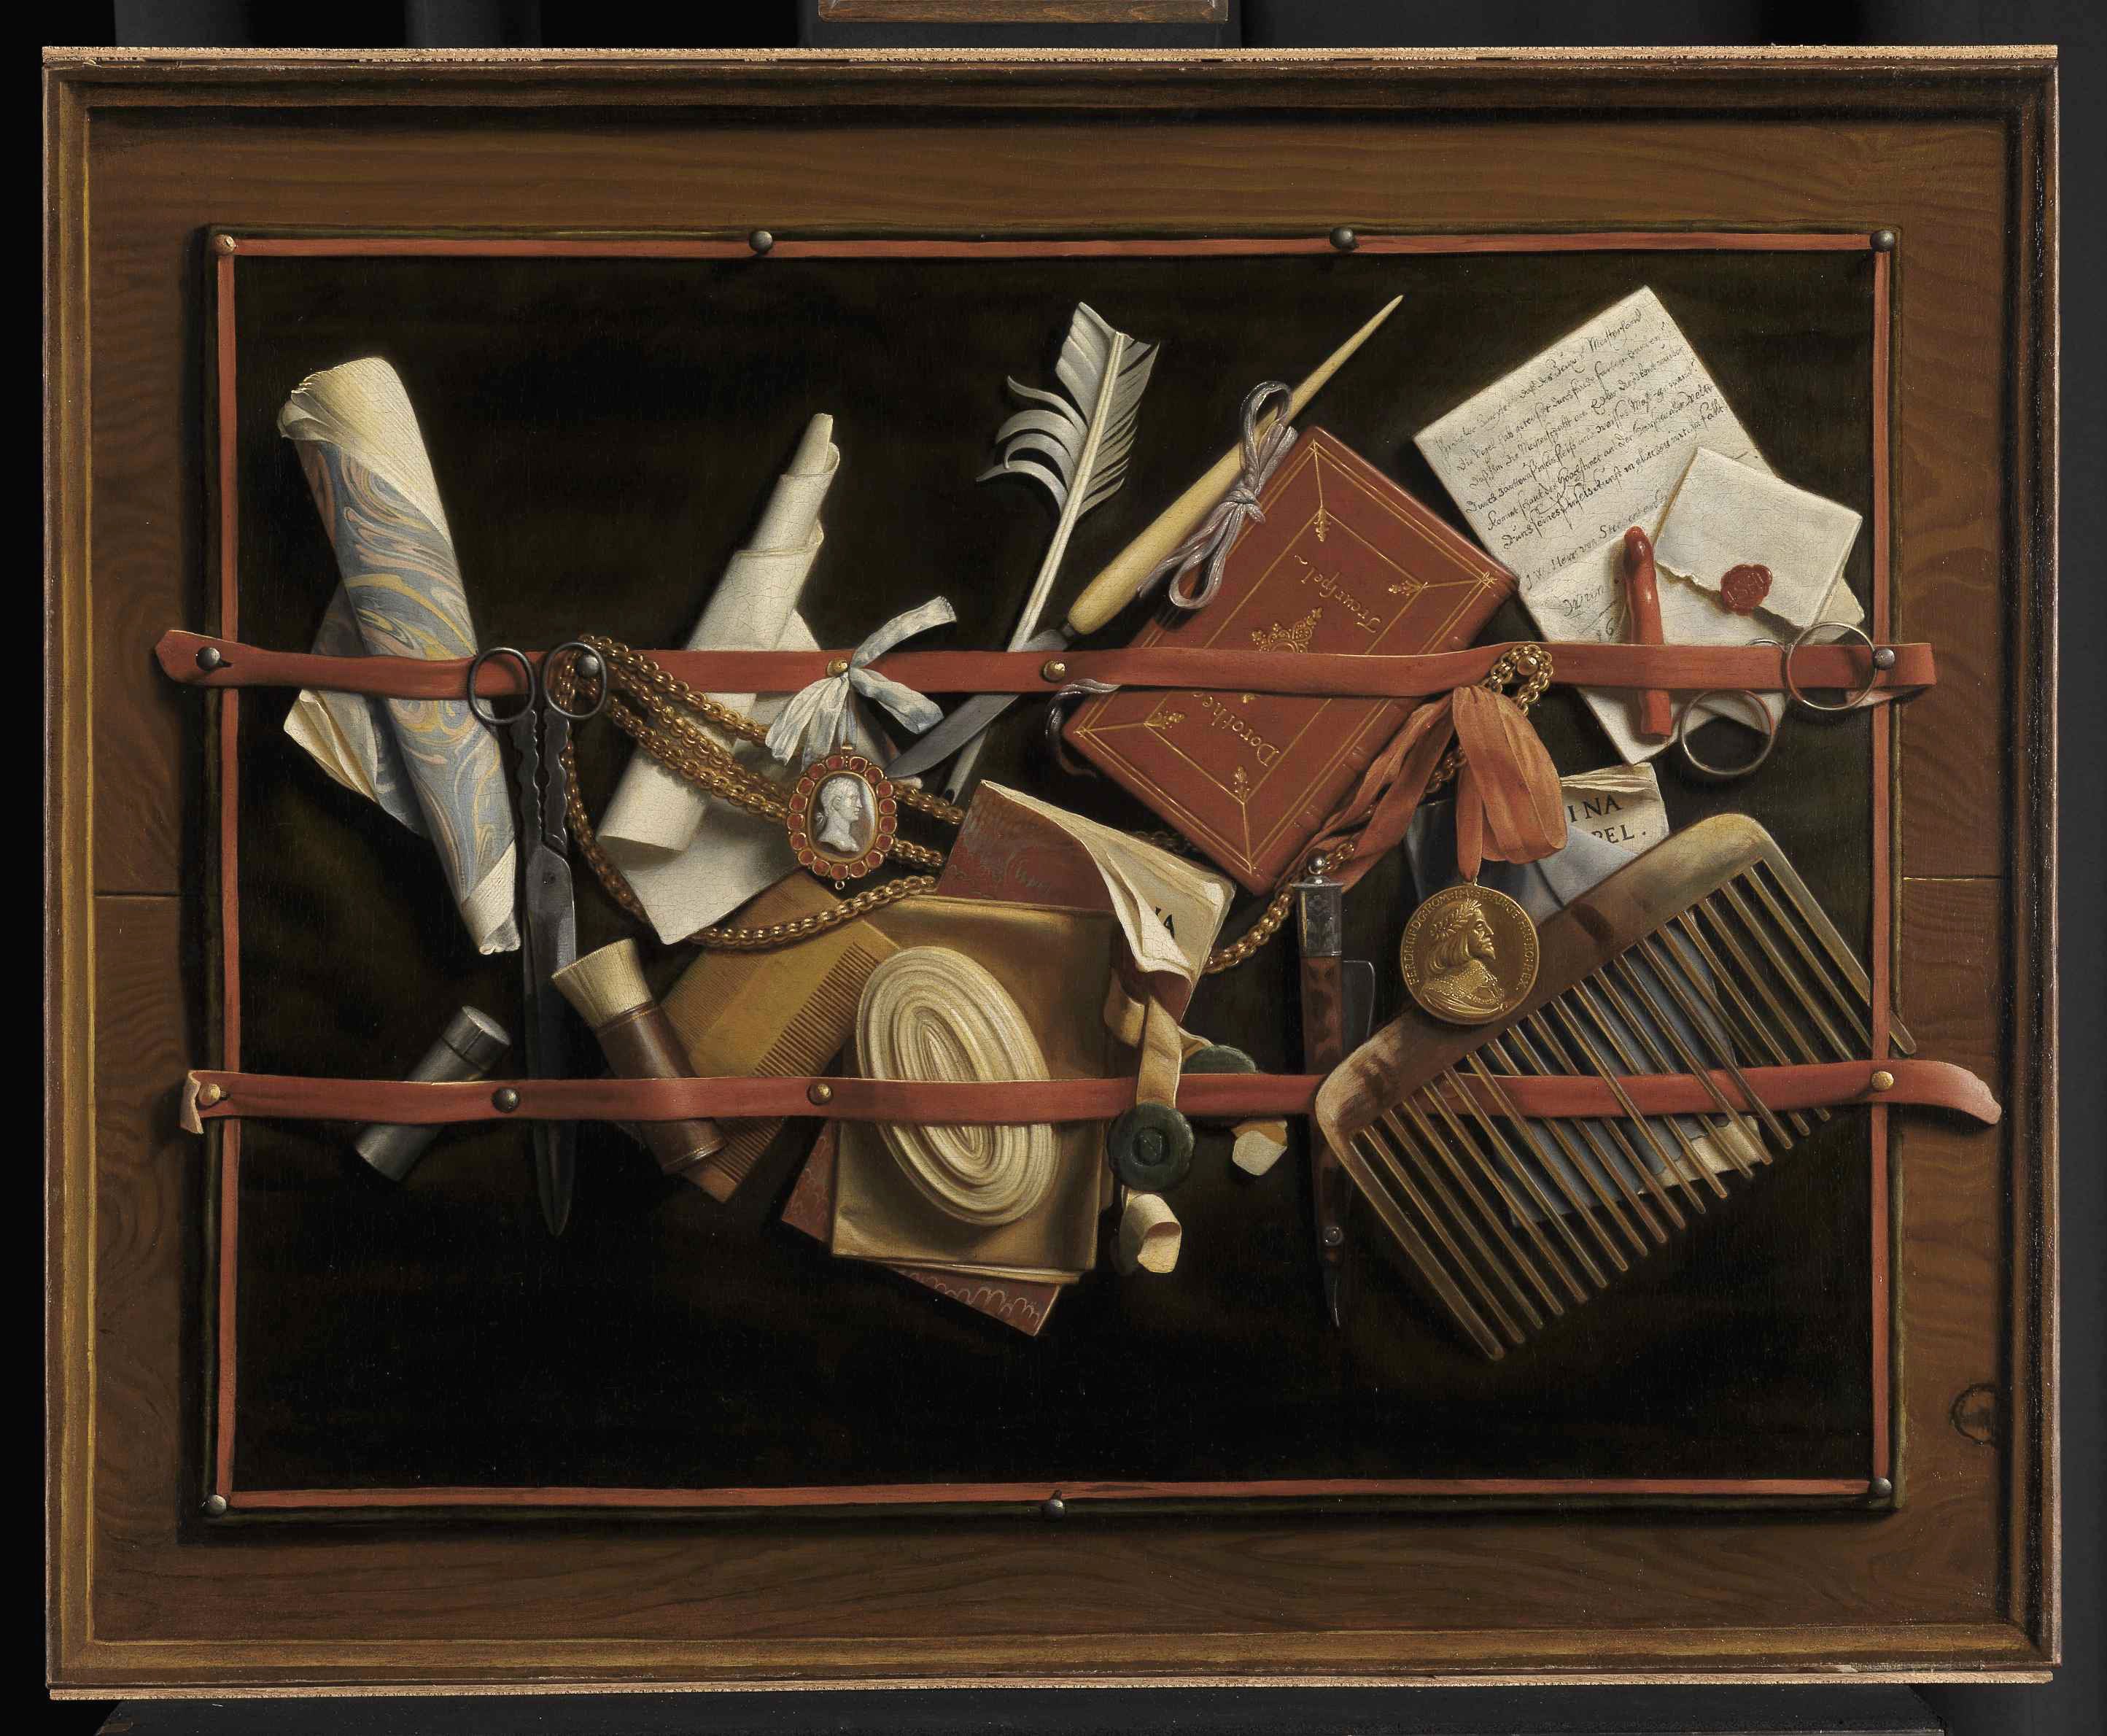 Das Gemälde zeigt eine Tafel an der viele unterschiedliche Gegenstände mit einem Lederband befestigt sind.